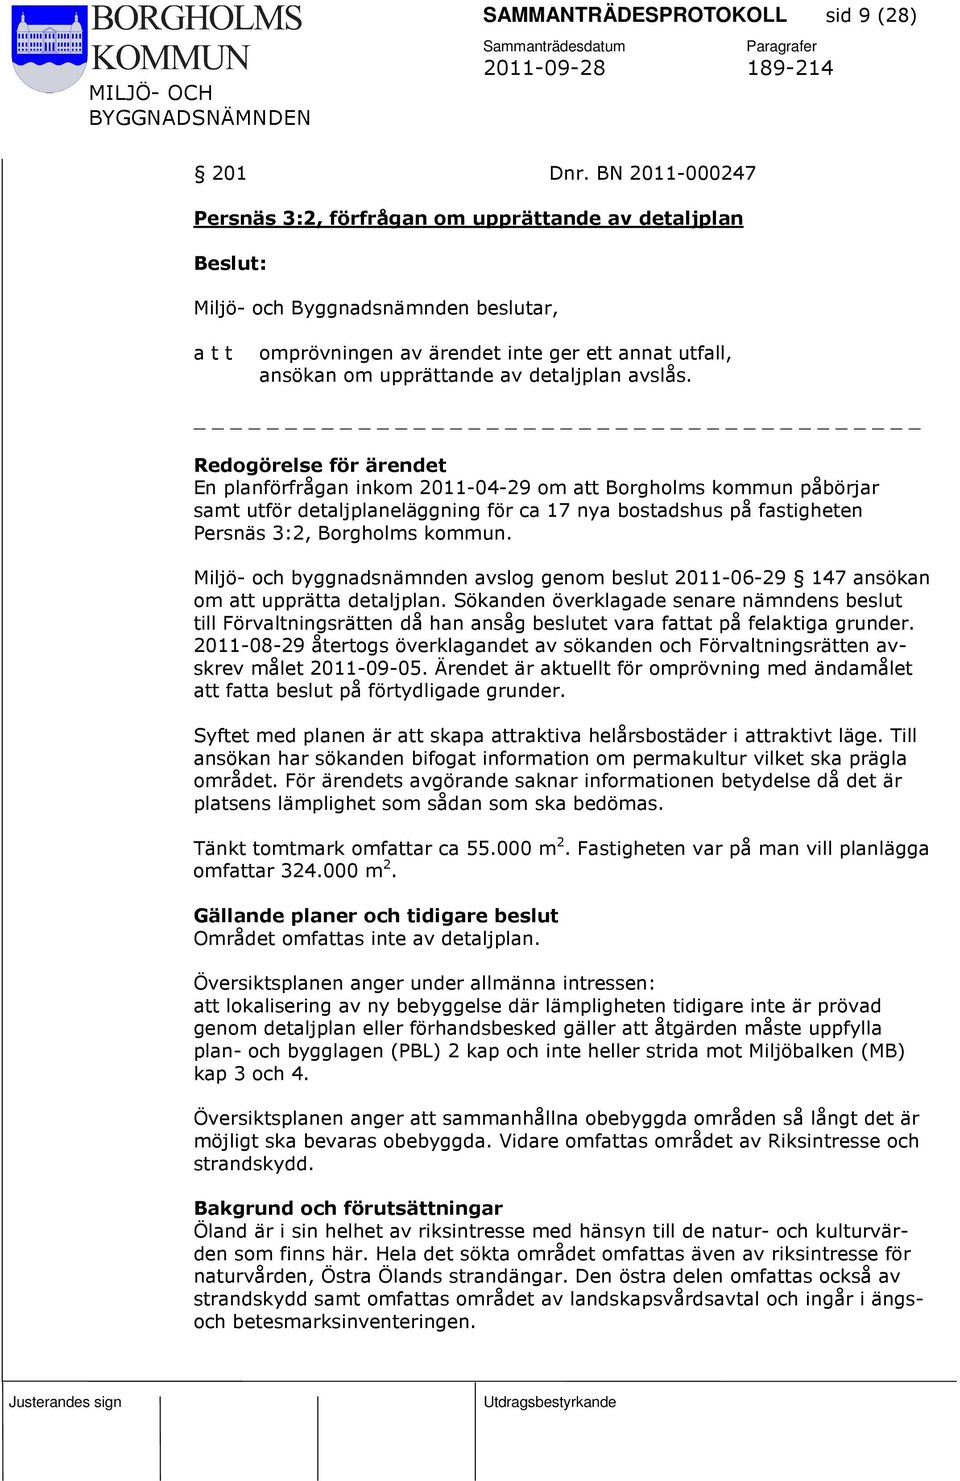 En planförfrågan inkom 2011-04-29 om att Borgholms kommun påbörjar samt utför detaljplaneläggning för ca 17 nya bostadshus på fastigheten Persnäs 3:2, Borgholms kommun.